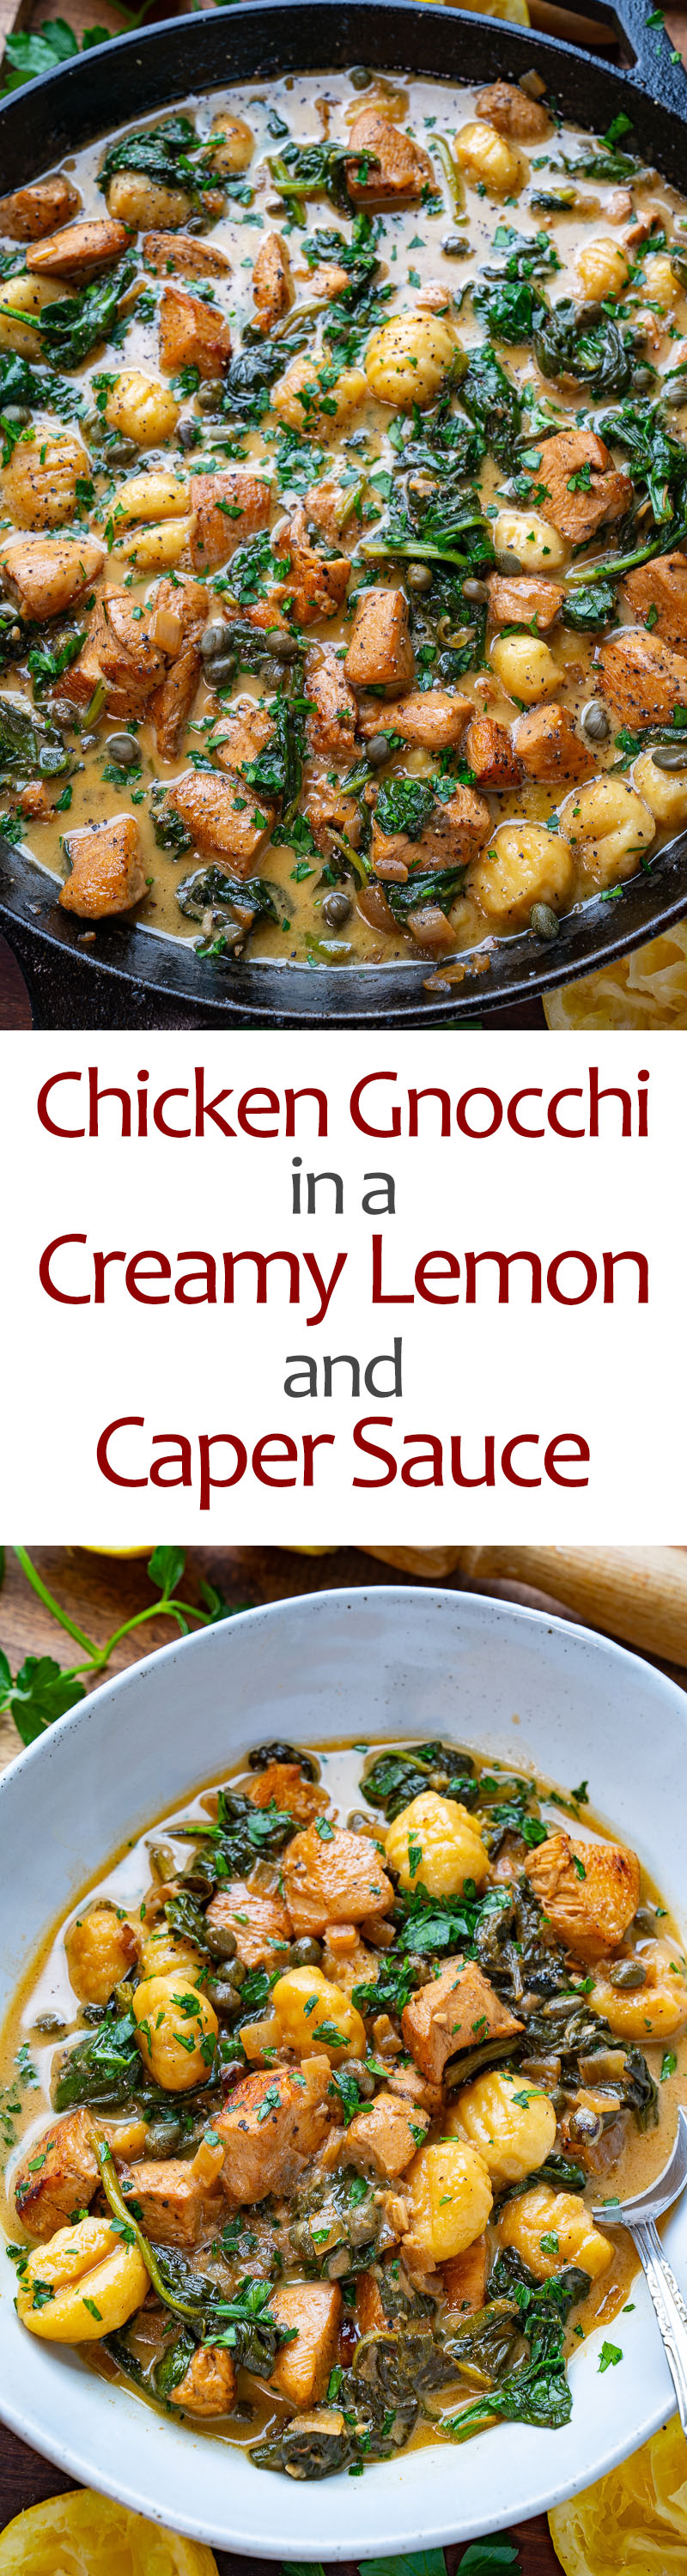 Chicken Gnocchi in a Creamy Lemon and Caper Sauce